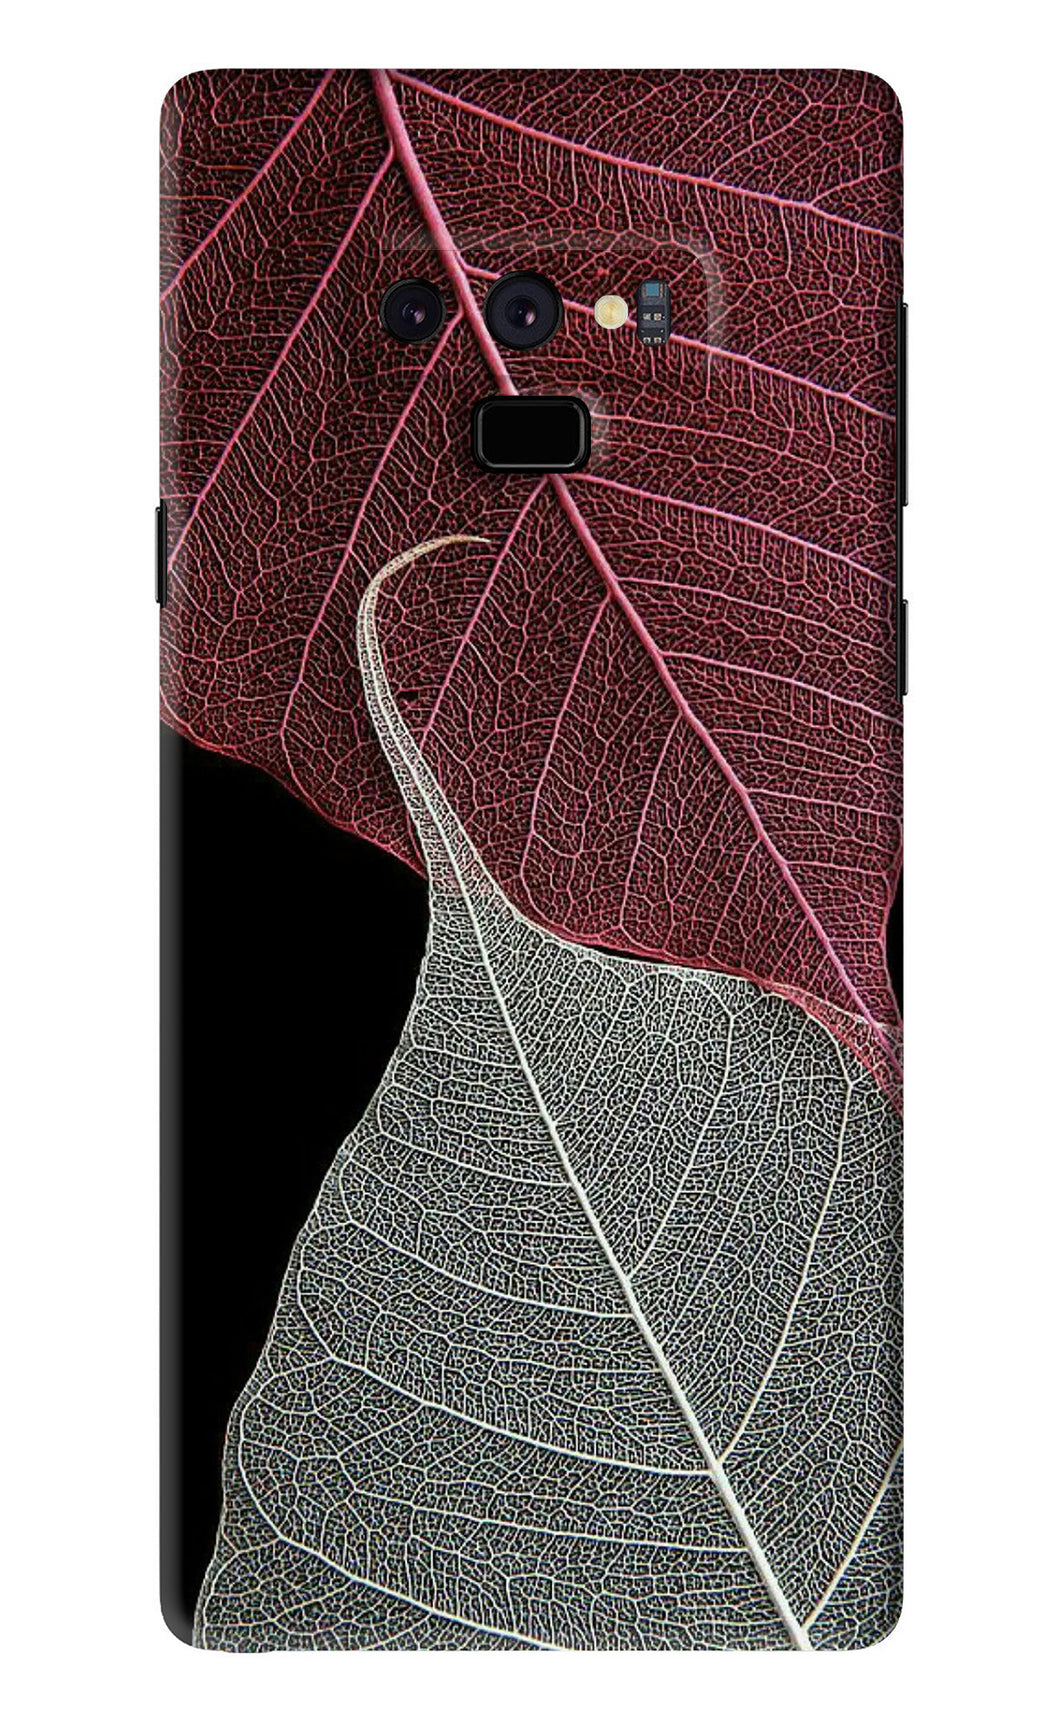 Leaf Pattern Samsung Galaxy Note 9 Back Skin Wrap